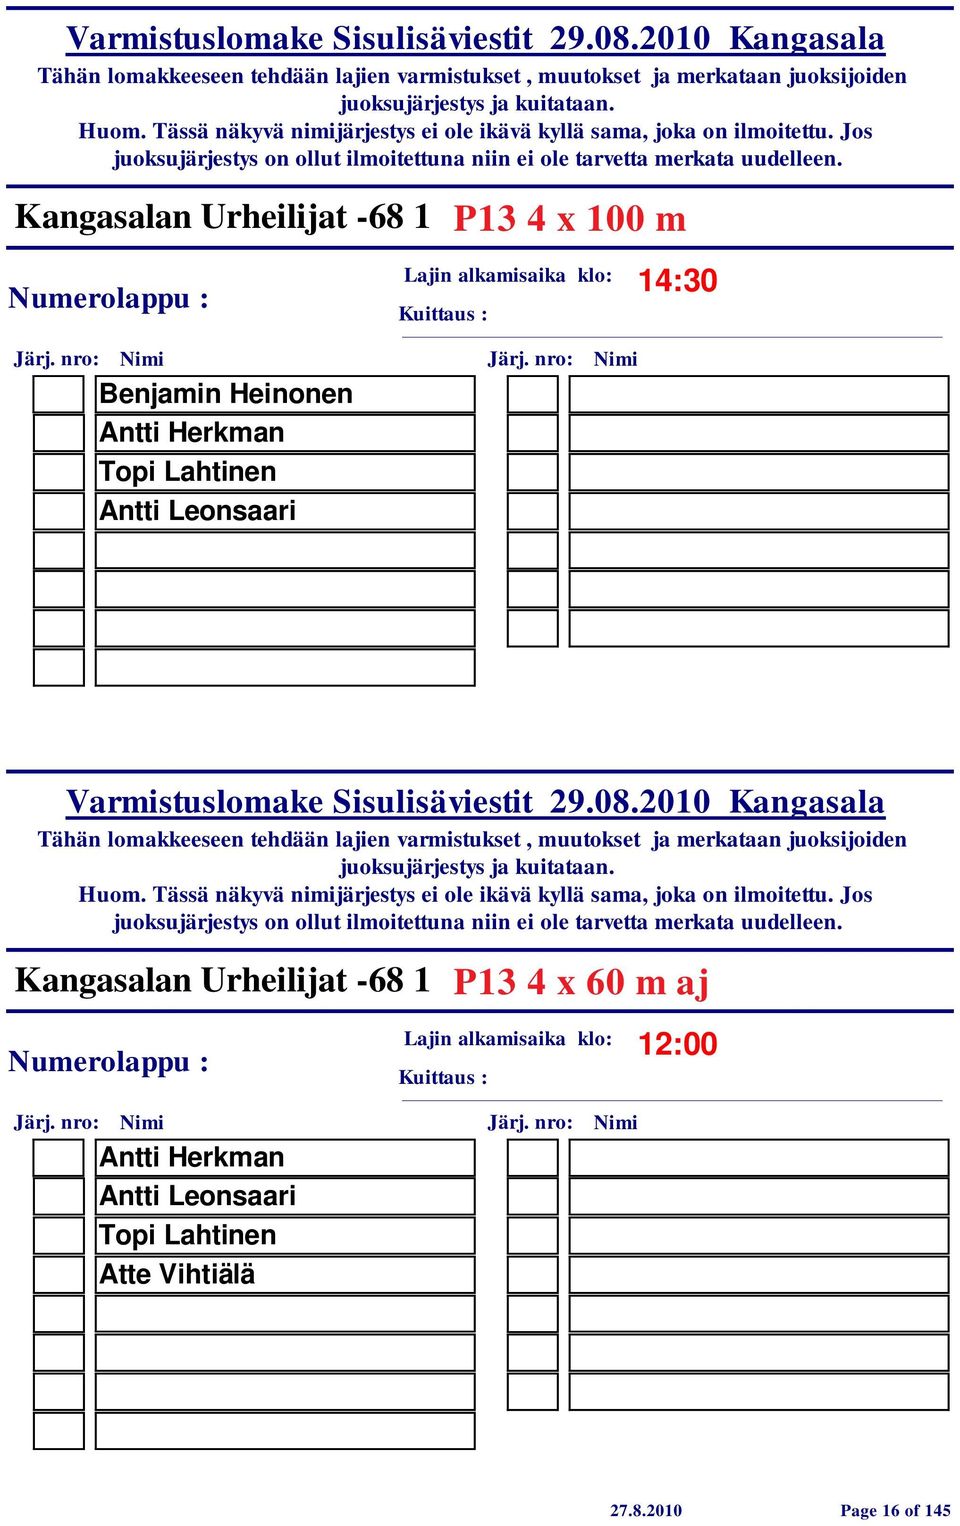 Kangasalan Urheilijat -68 1 P13 4 x 60 m aj 12:00 Antti